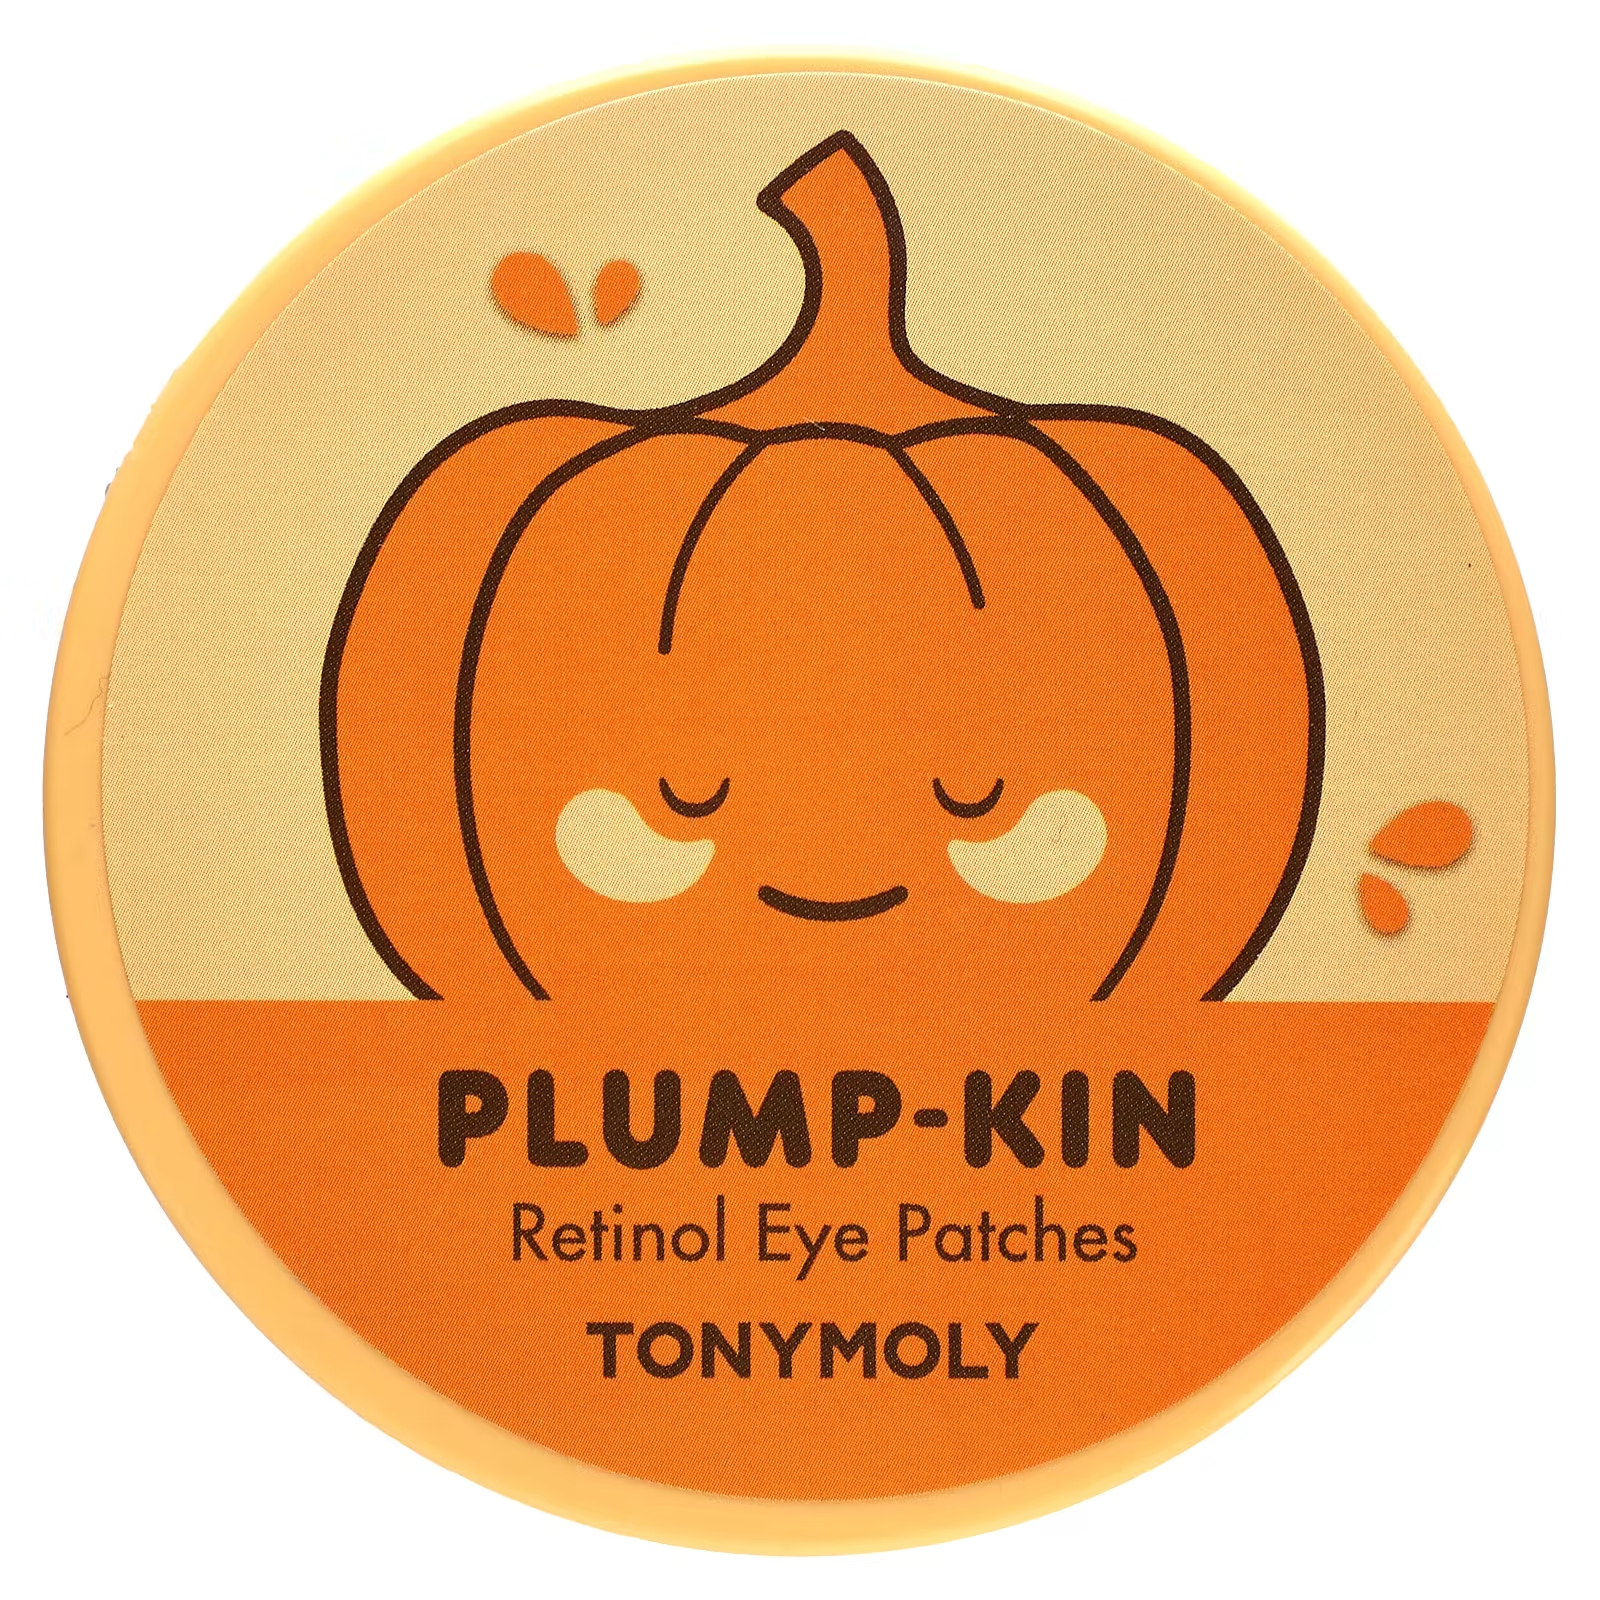 Tony Moly Plump-Kin патчи для глаз с ретинолом, 60 патчей по 2,96 унции (84 г) каждый tony moly plump kin патчи для глаз с ретинолом 60 патчей 84 г 2 96 унции